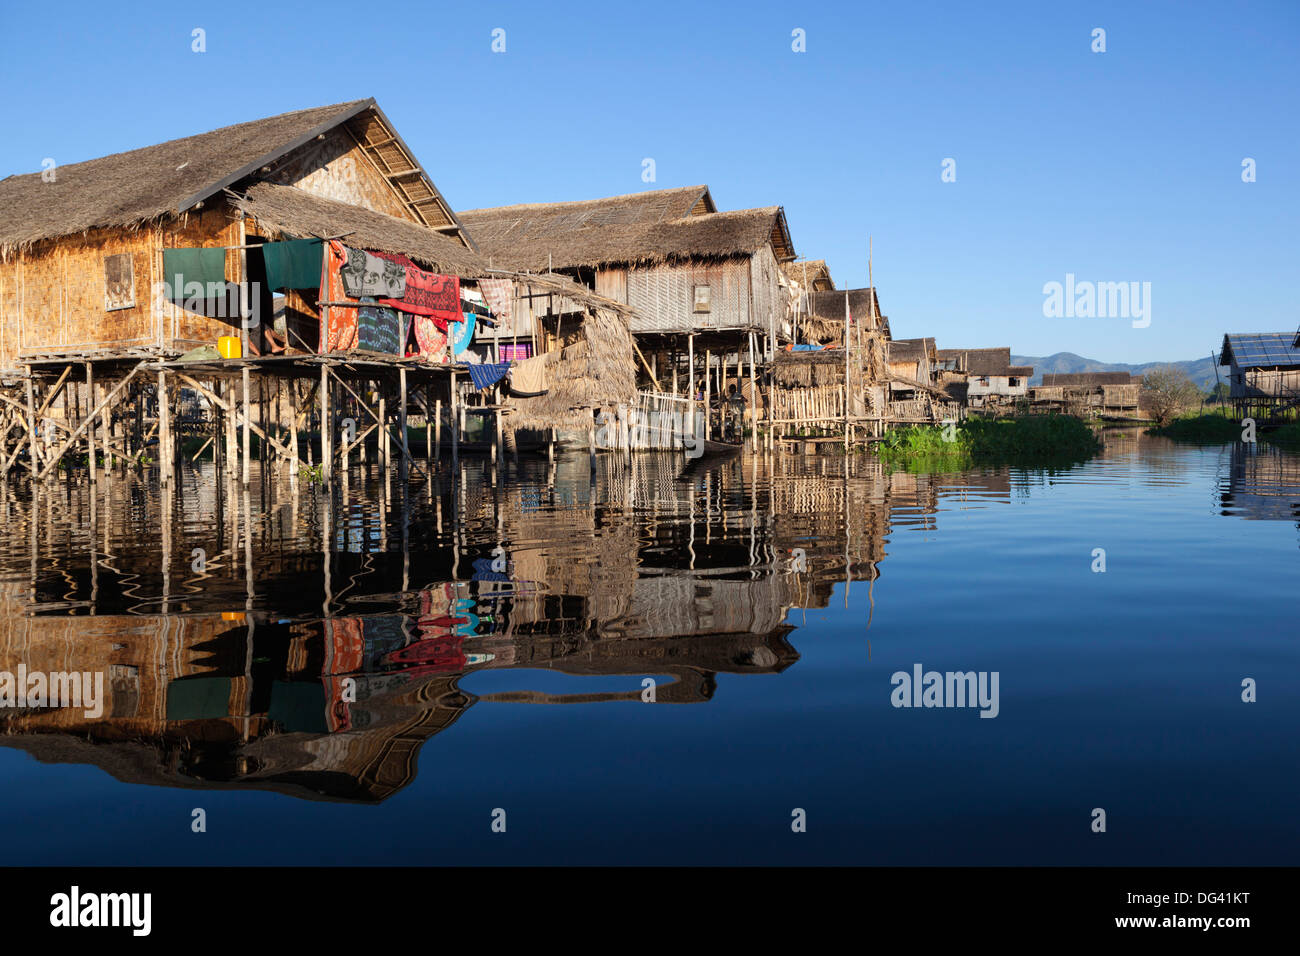 Des maisons sur pilotis au village local, le lac Inle, l'État de Shan, Myanmar (Birmanie), l'Asie Banque D'Images